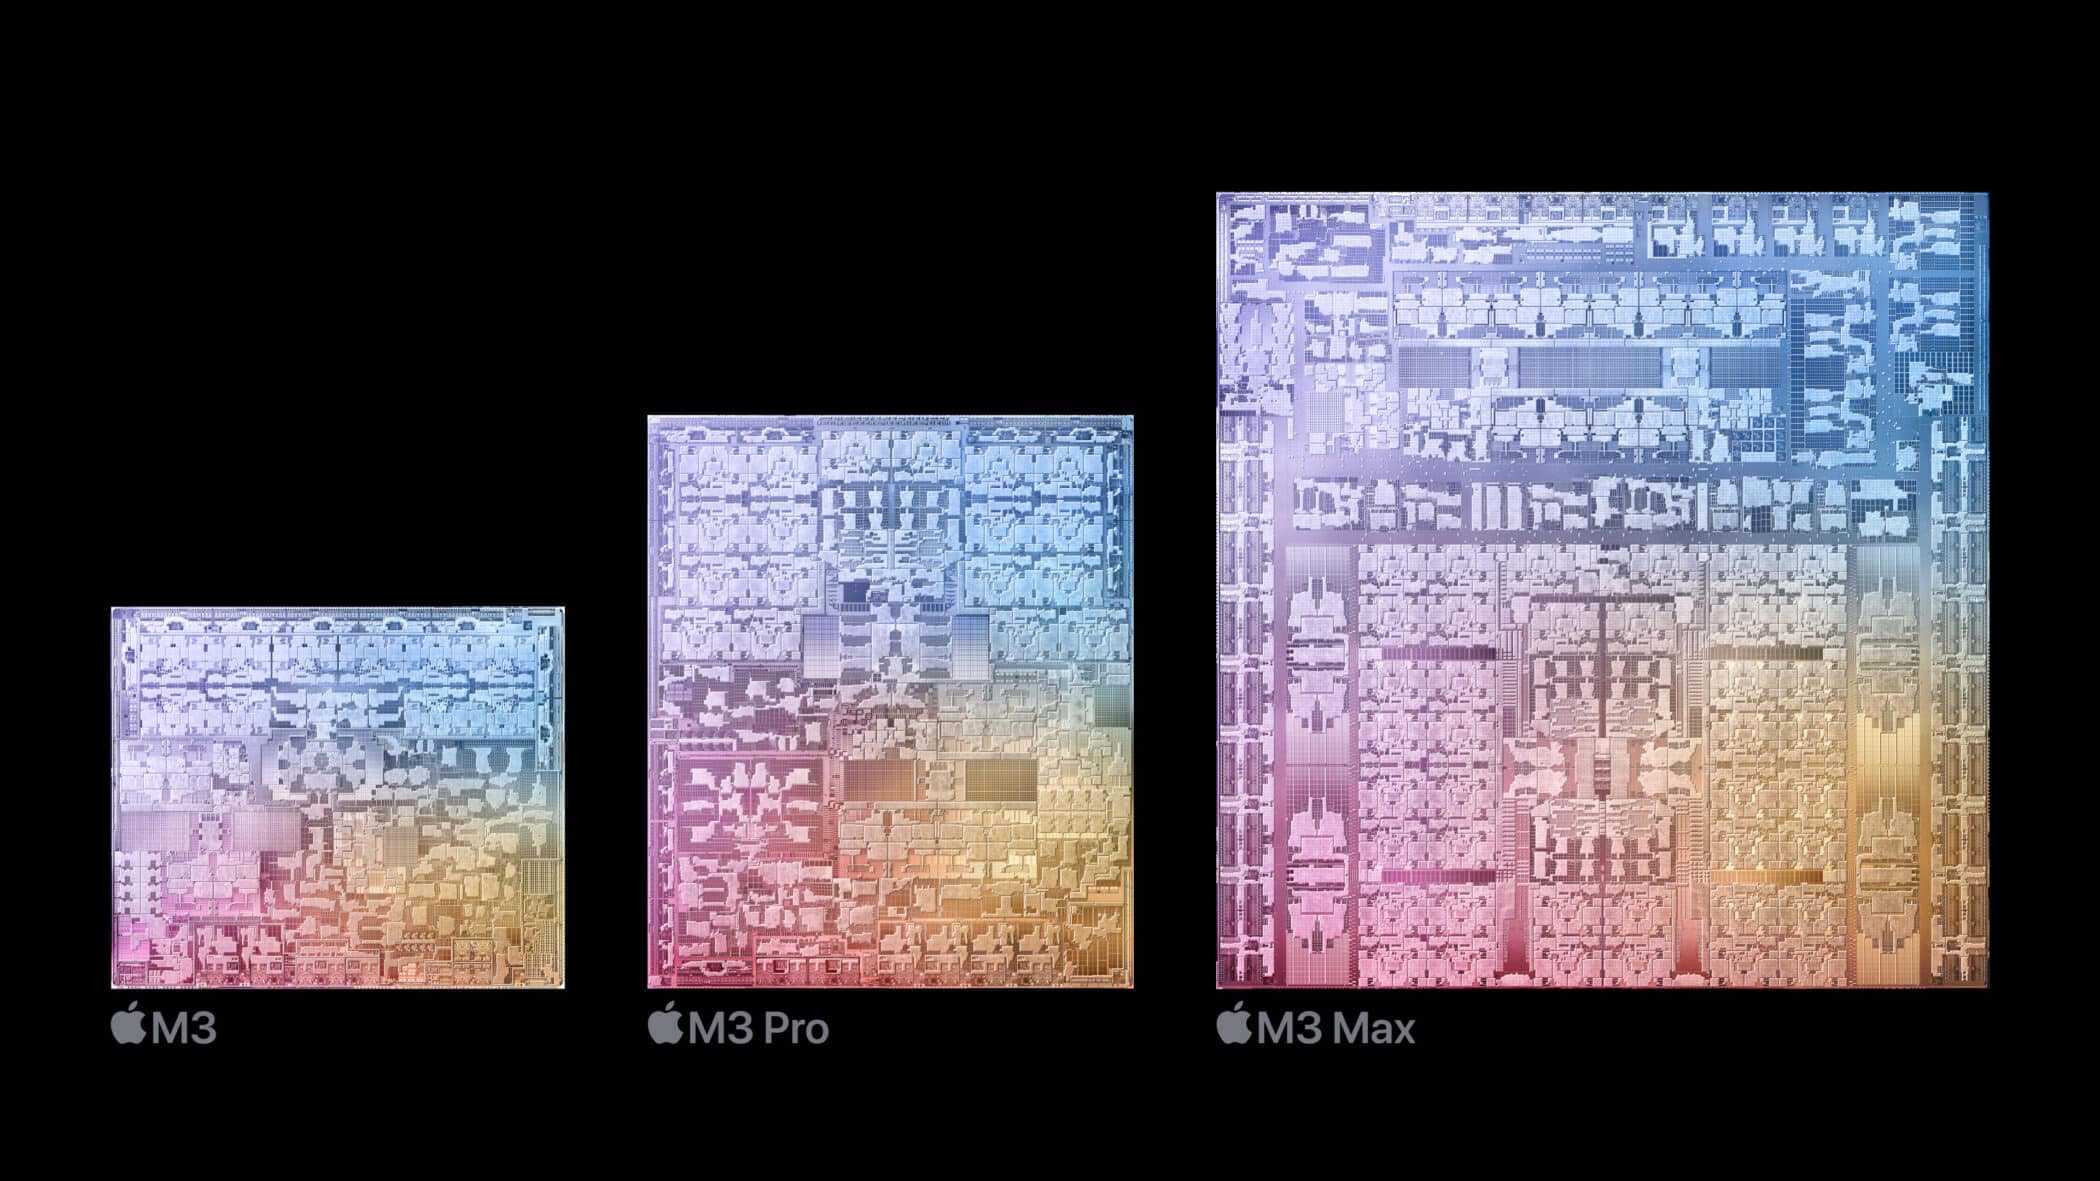 AppleのM3 MaxチップからのUltraFusionインターコネクト削除は新たな巨大チップ登場の前兆か？